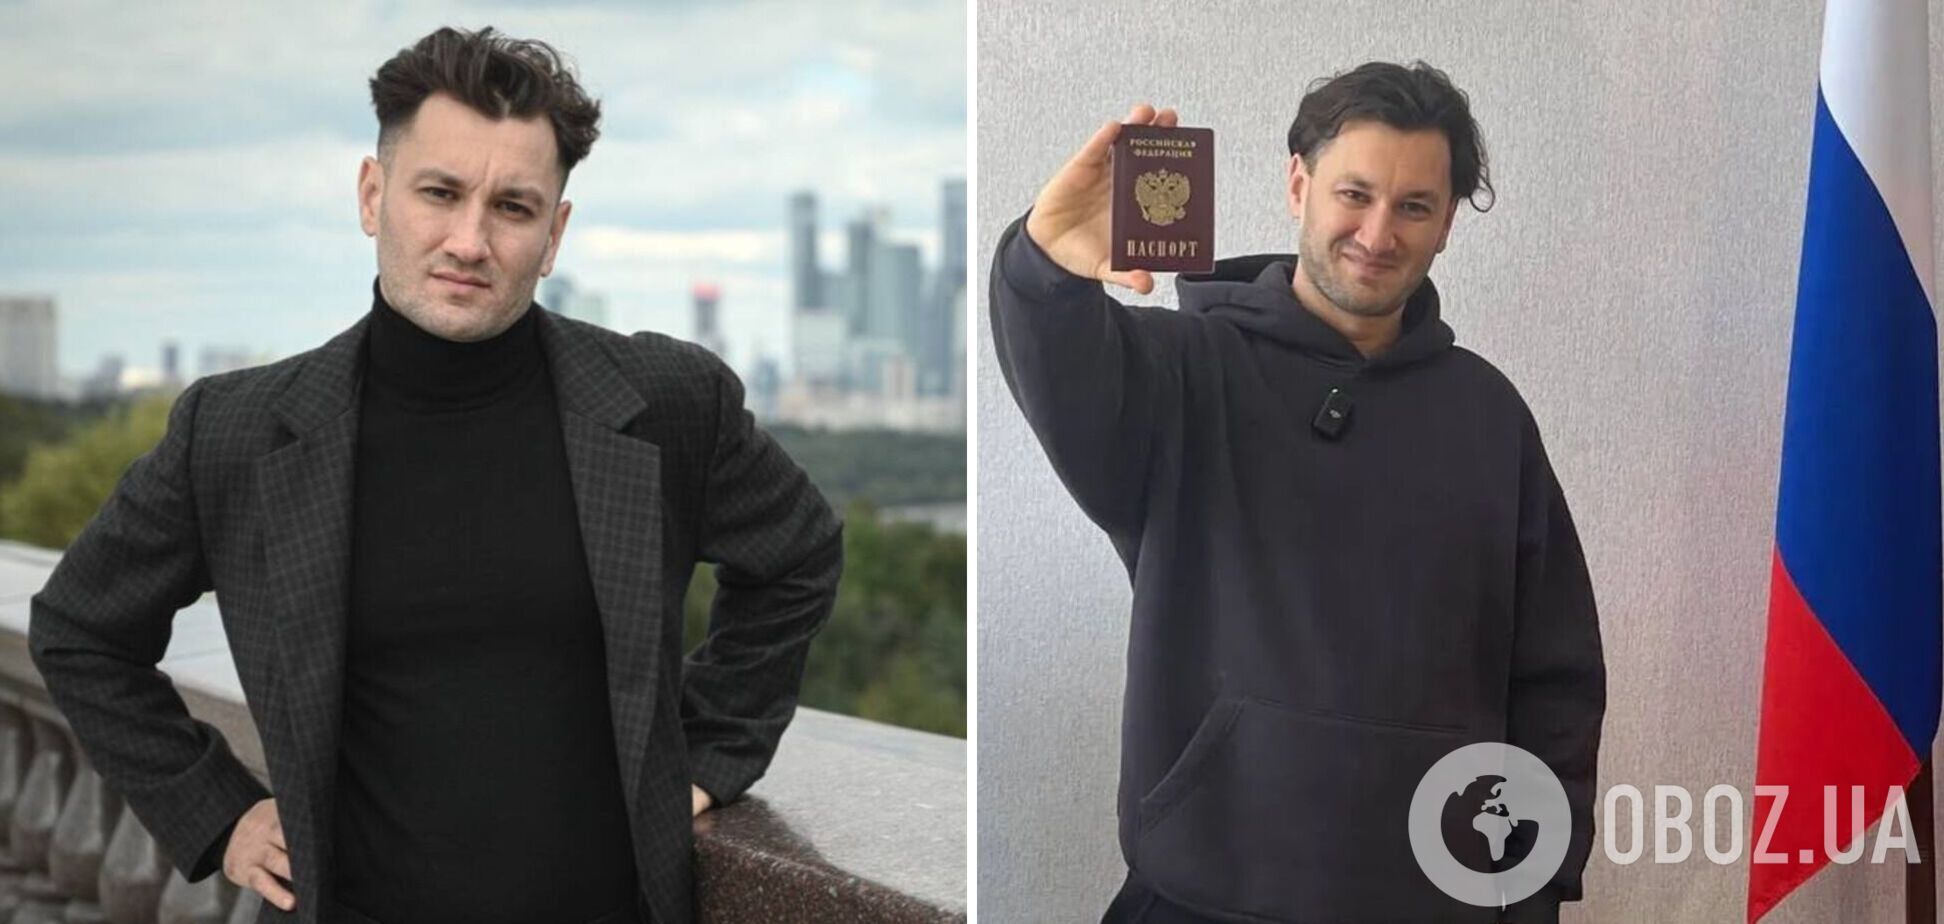 Юрий Бардаш унизил Родину: украинский паспорт так же не нужен, как и Украина, но сжигать его не буду